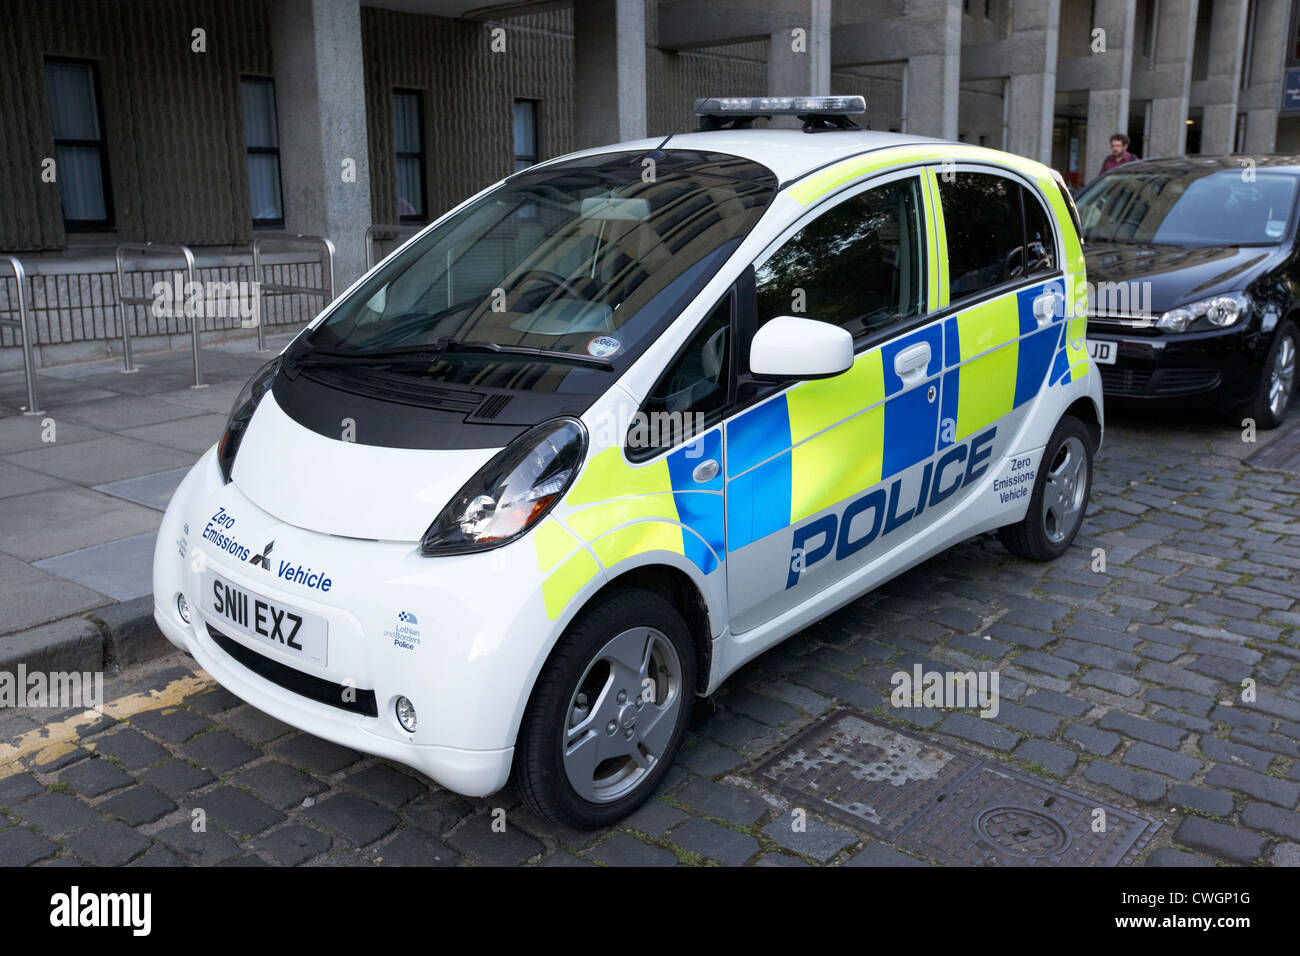 La police des frontières et lothian véhicules électriques zéro émission Edinburgh, Scotland, UK, Royaume-Uni Banque D'Images